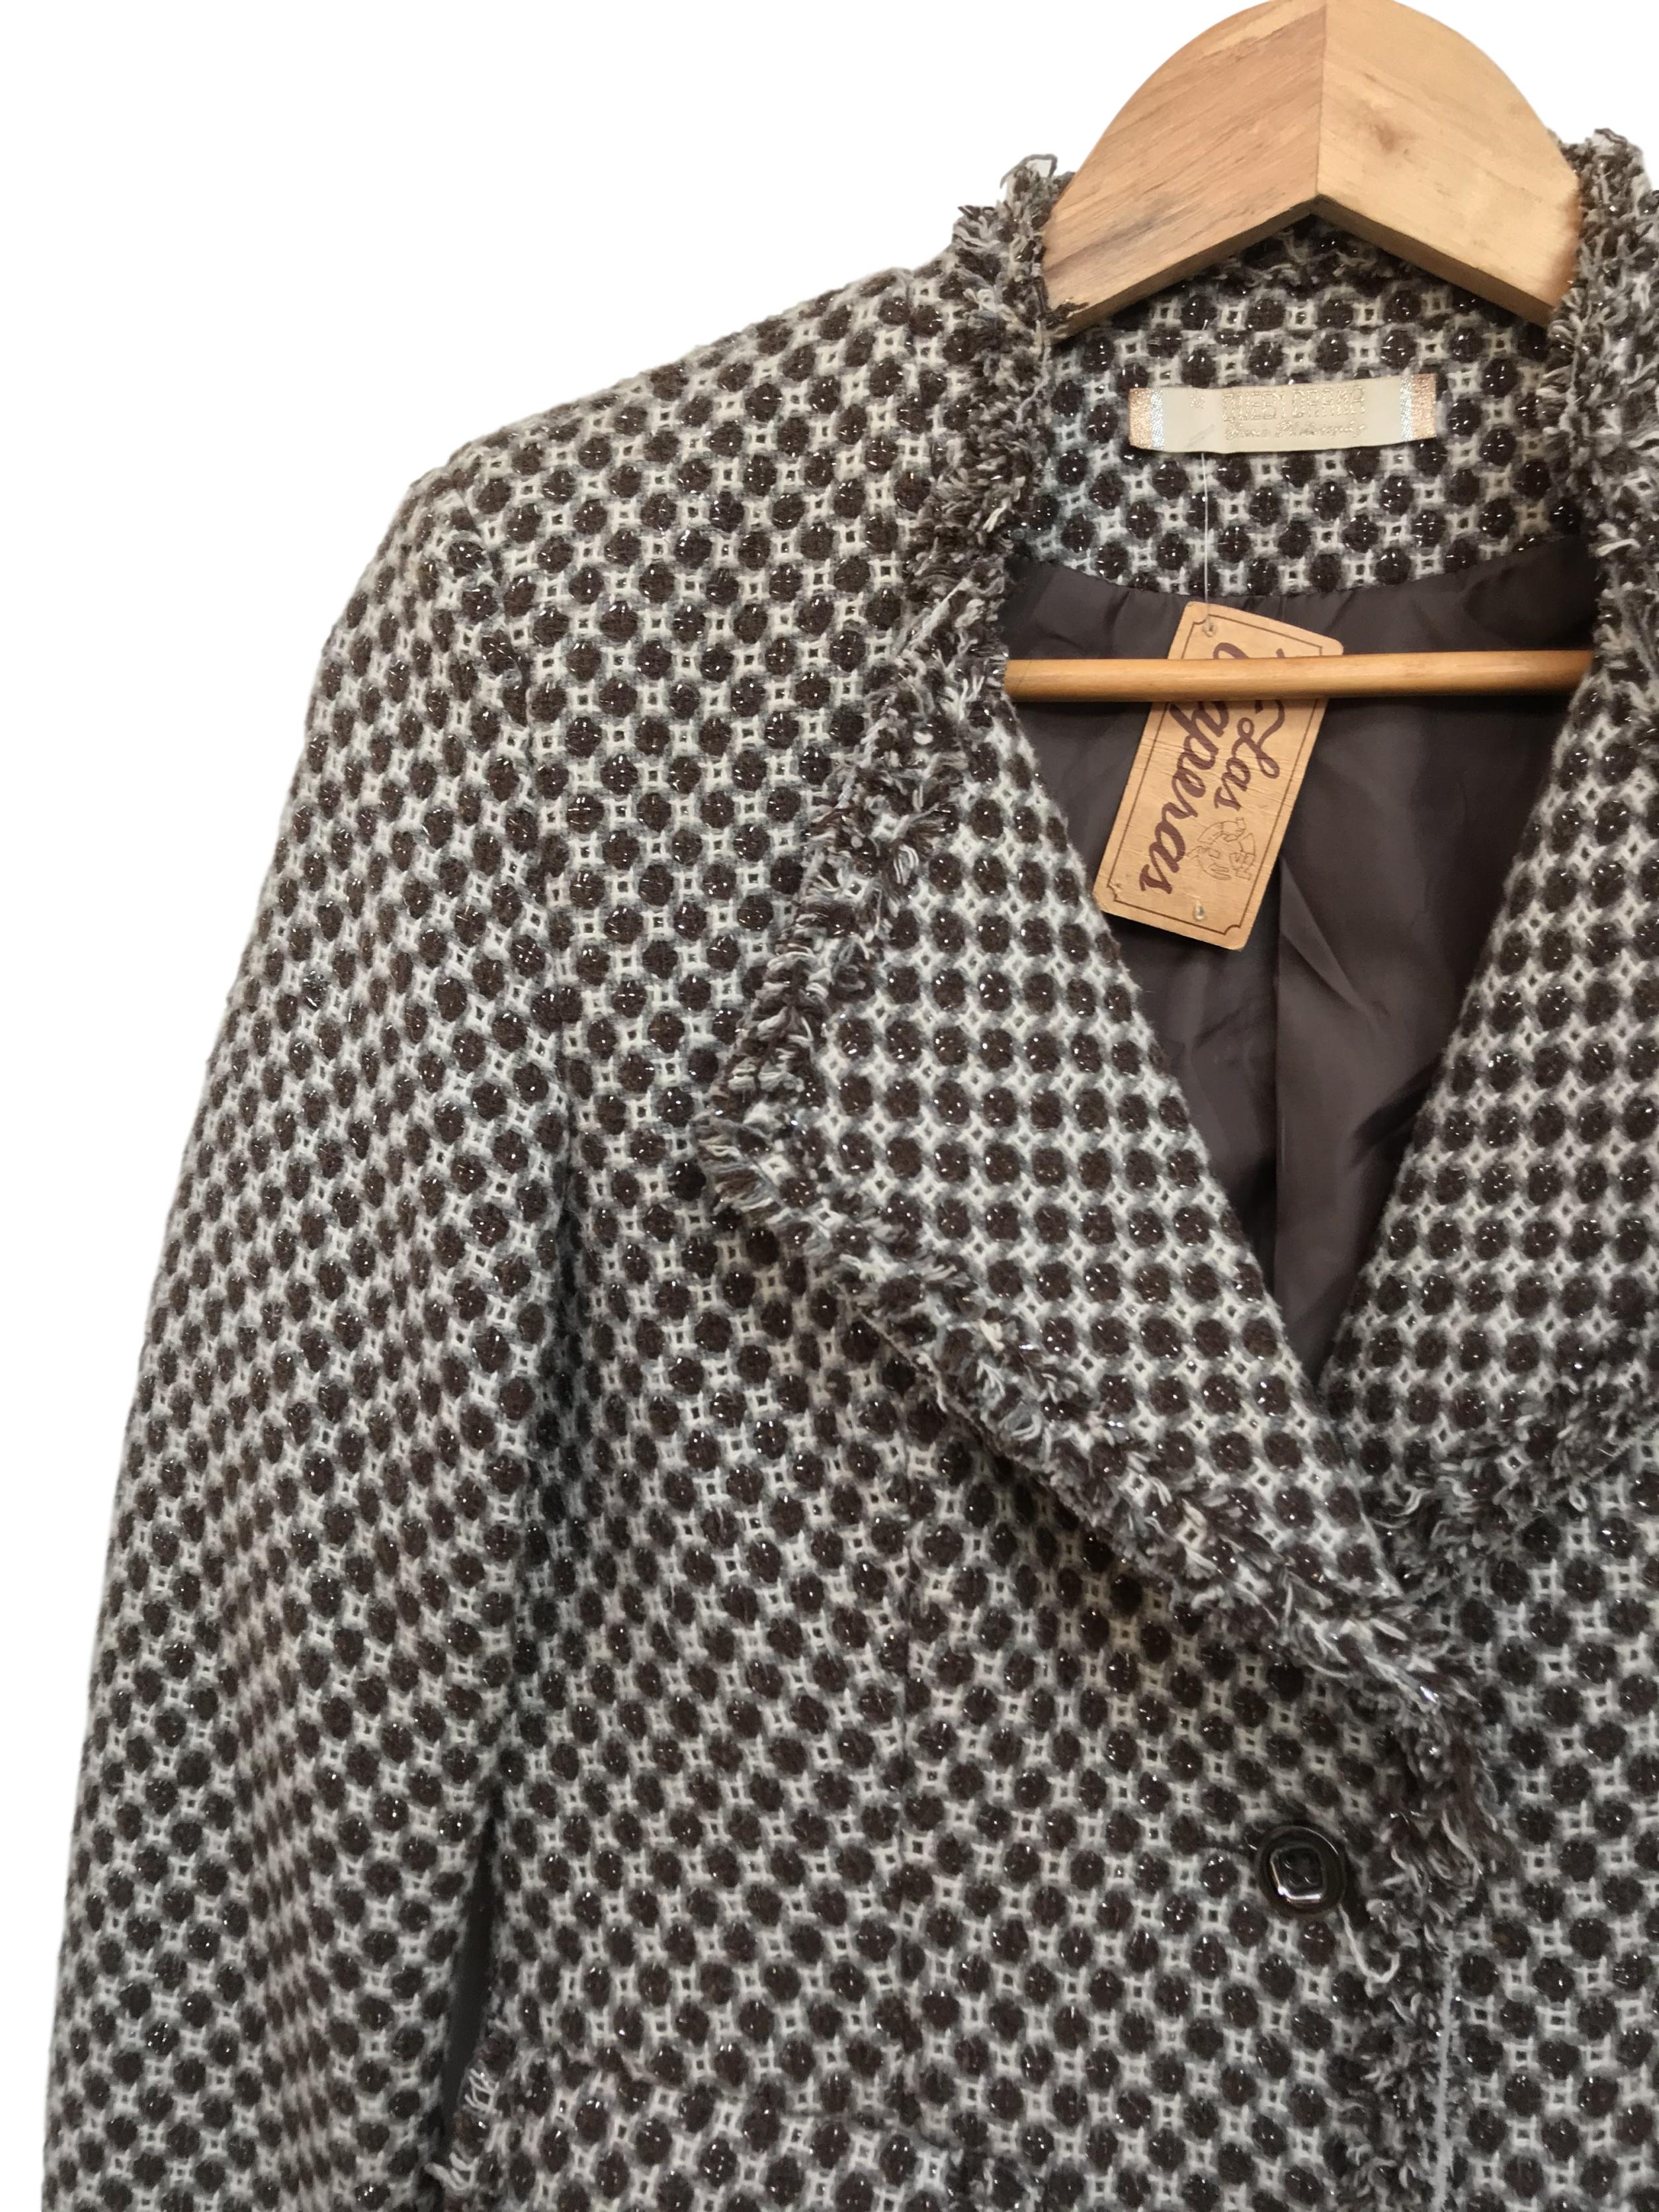 Abrigo tipo tweed marrón, blanco y plomo, forrado, solapas, botones y bolsillos delanteros, detalle de flecos
Talla S (puede ser M chico)